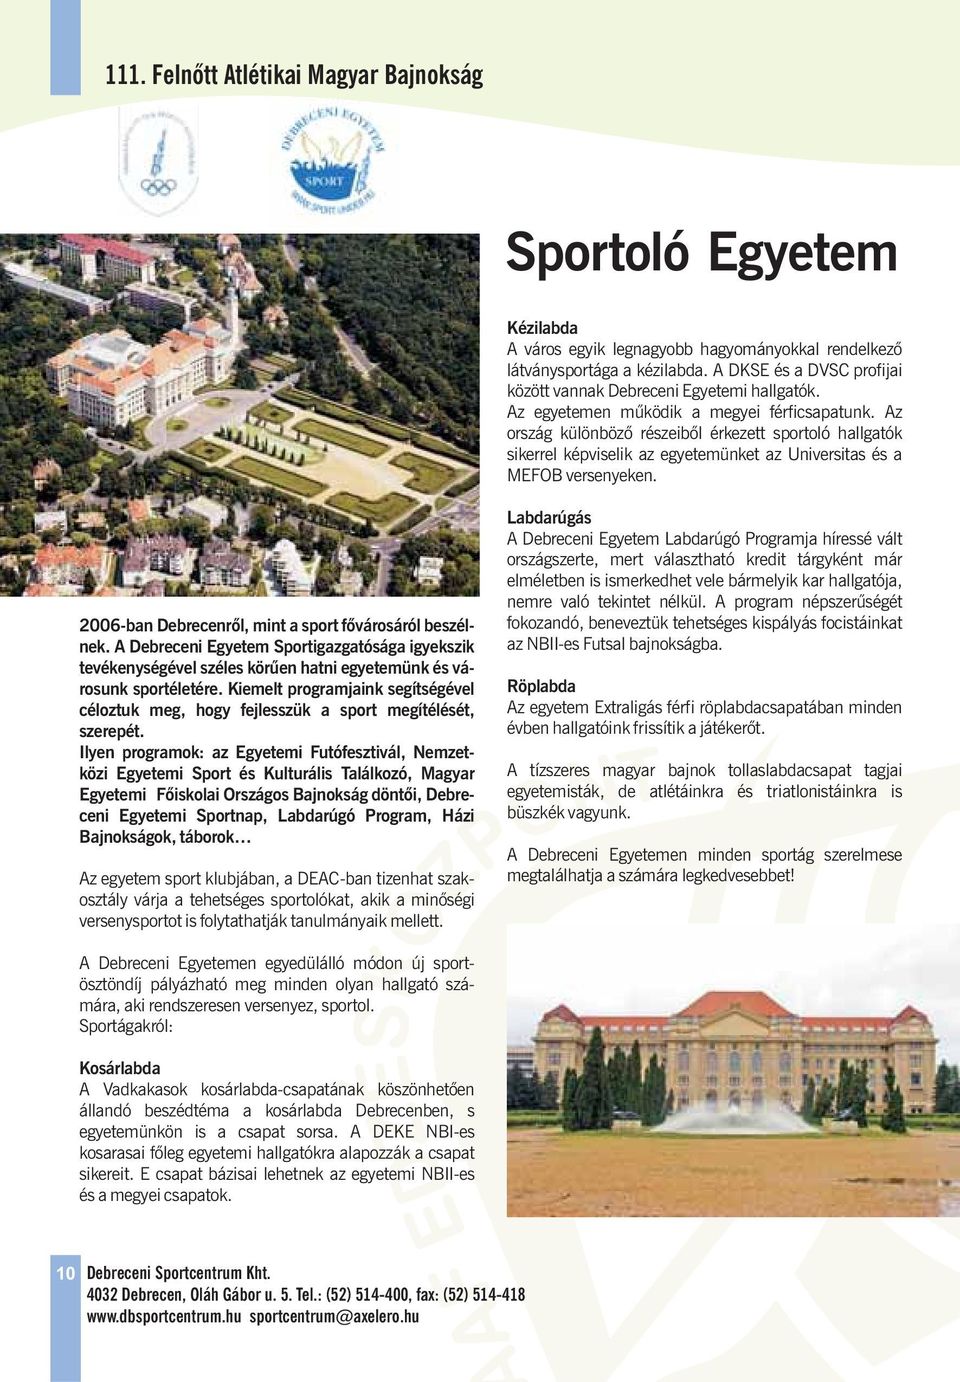 Az ország különbözõ részeibõl érkezett sportoló hallgatók sikerrel képviselik az egyetemünket az Universitas és a MEFOB versenyeken. 2006-ban Debrecenrõl, mint a sport fõvárosáról beszélnek.